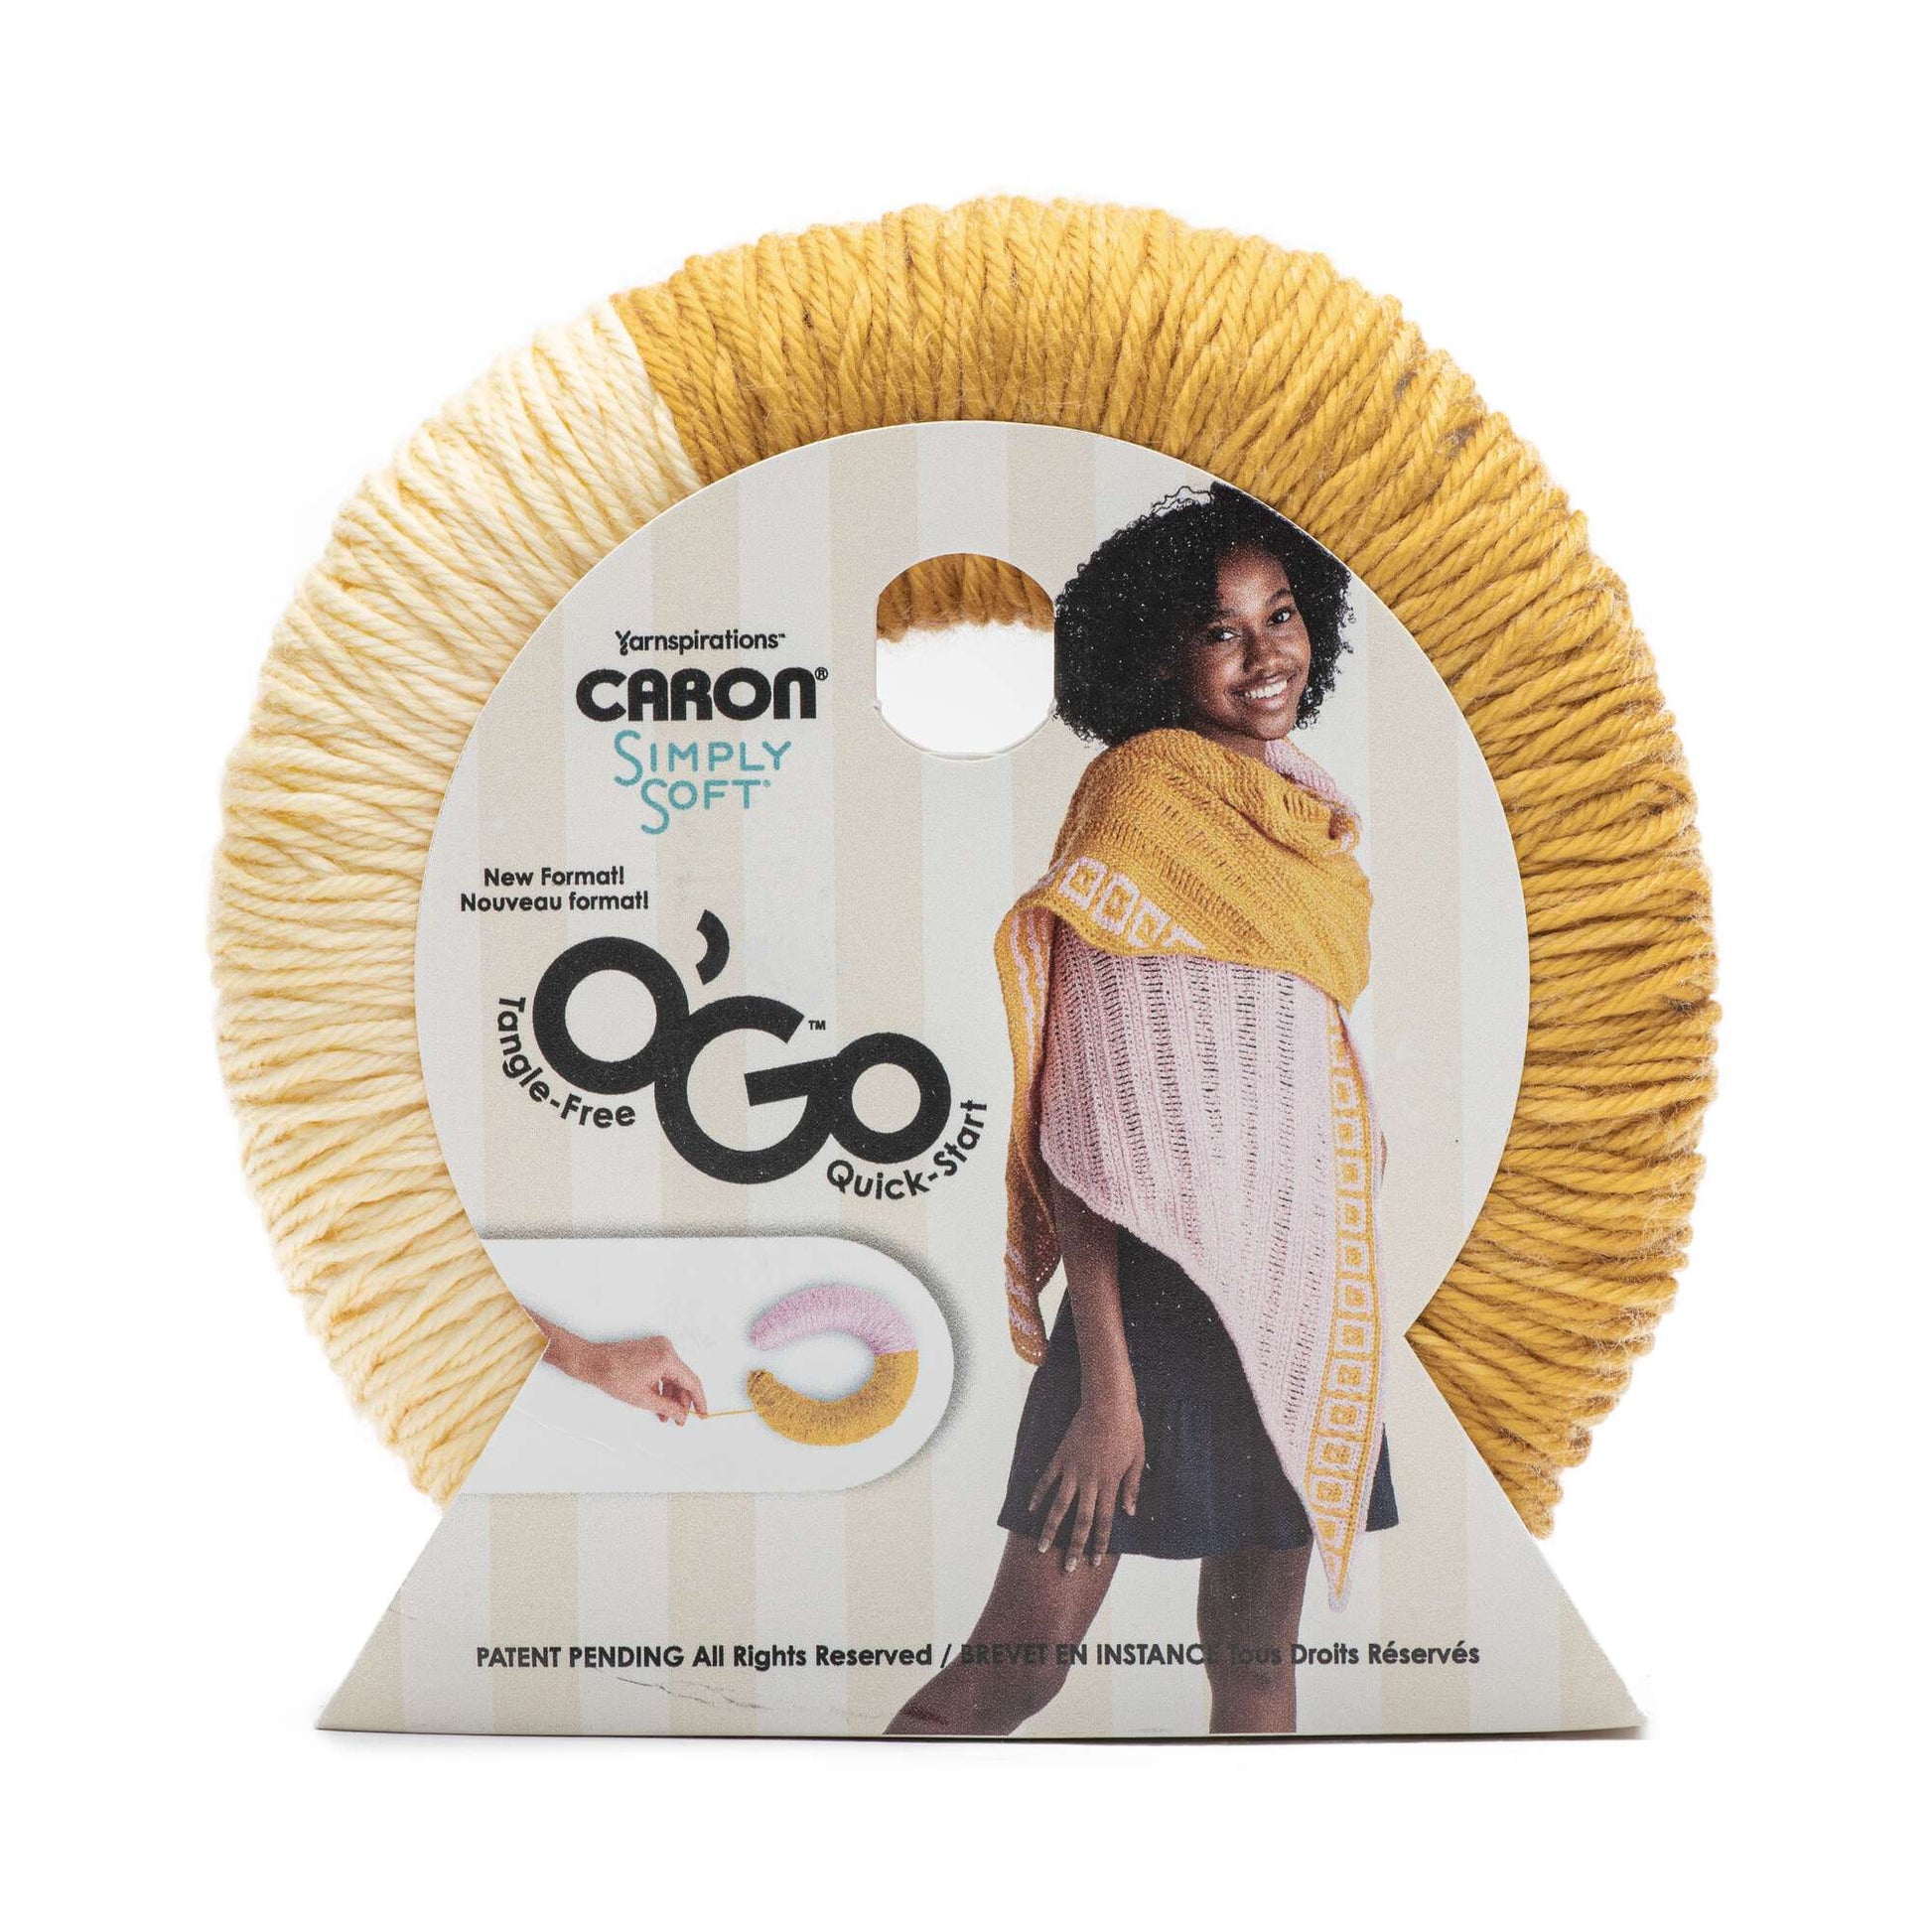 Caron Simply Soft O'Go (141g/5oz) - Discontinued Shades